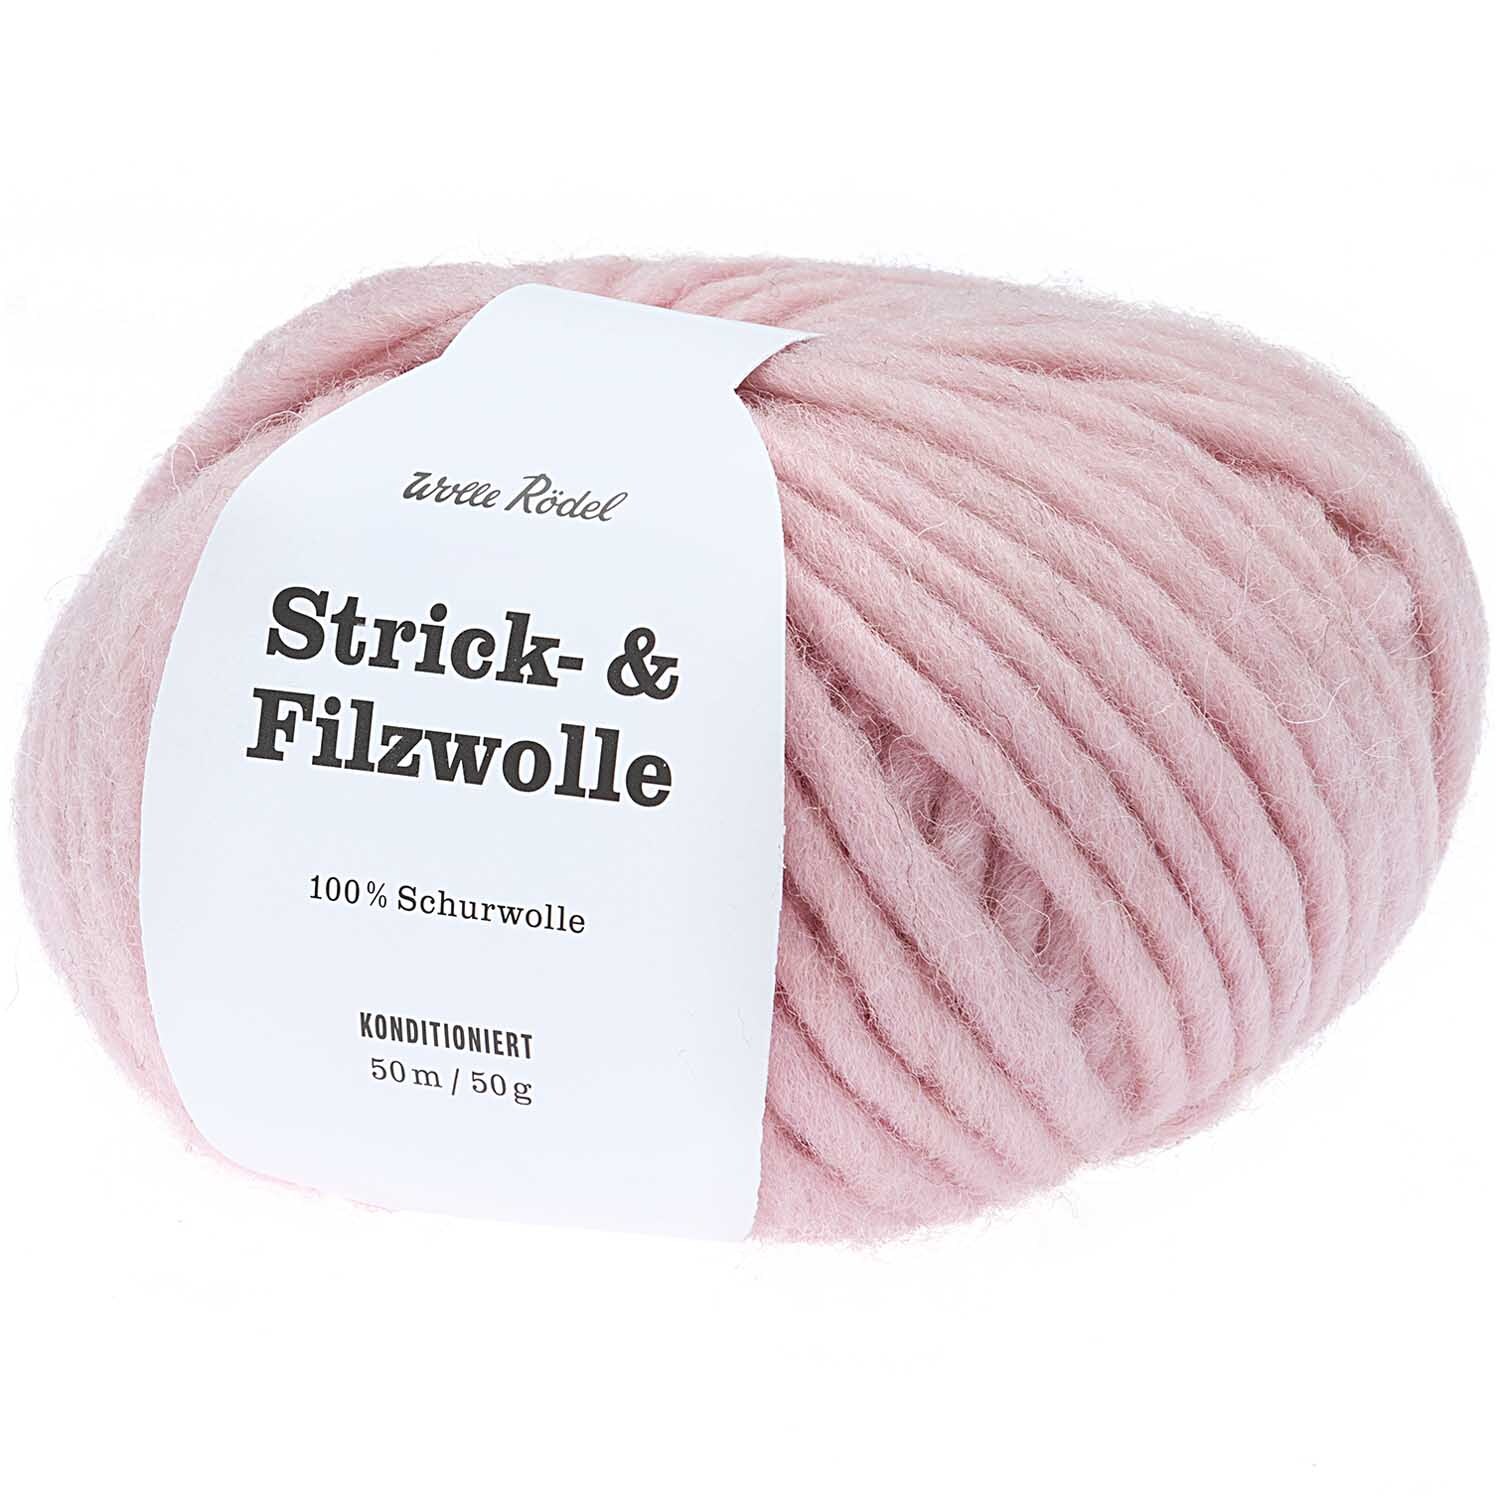 Strick- & Filzwolle